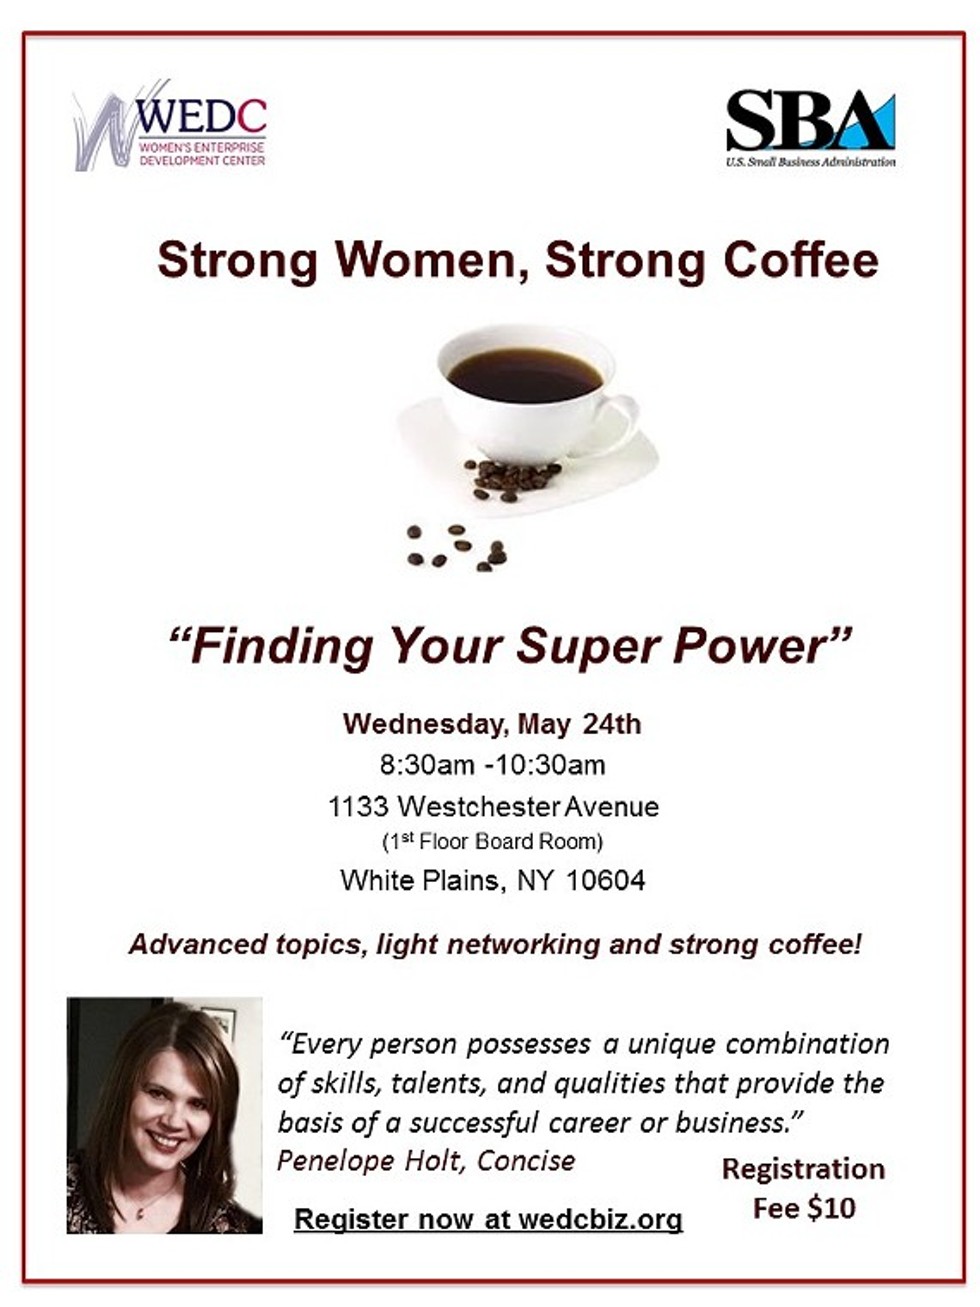 d2675c12_strong_women_strong_coffee.jpg